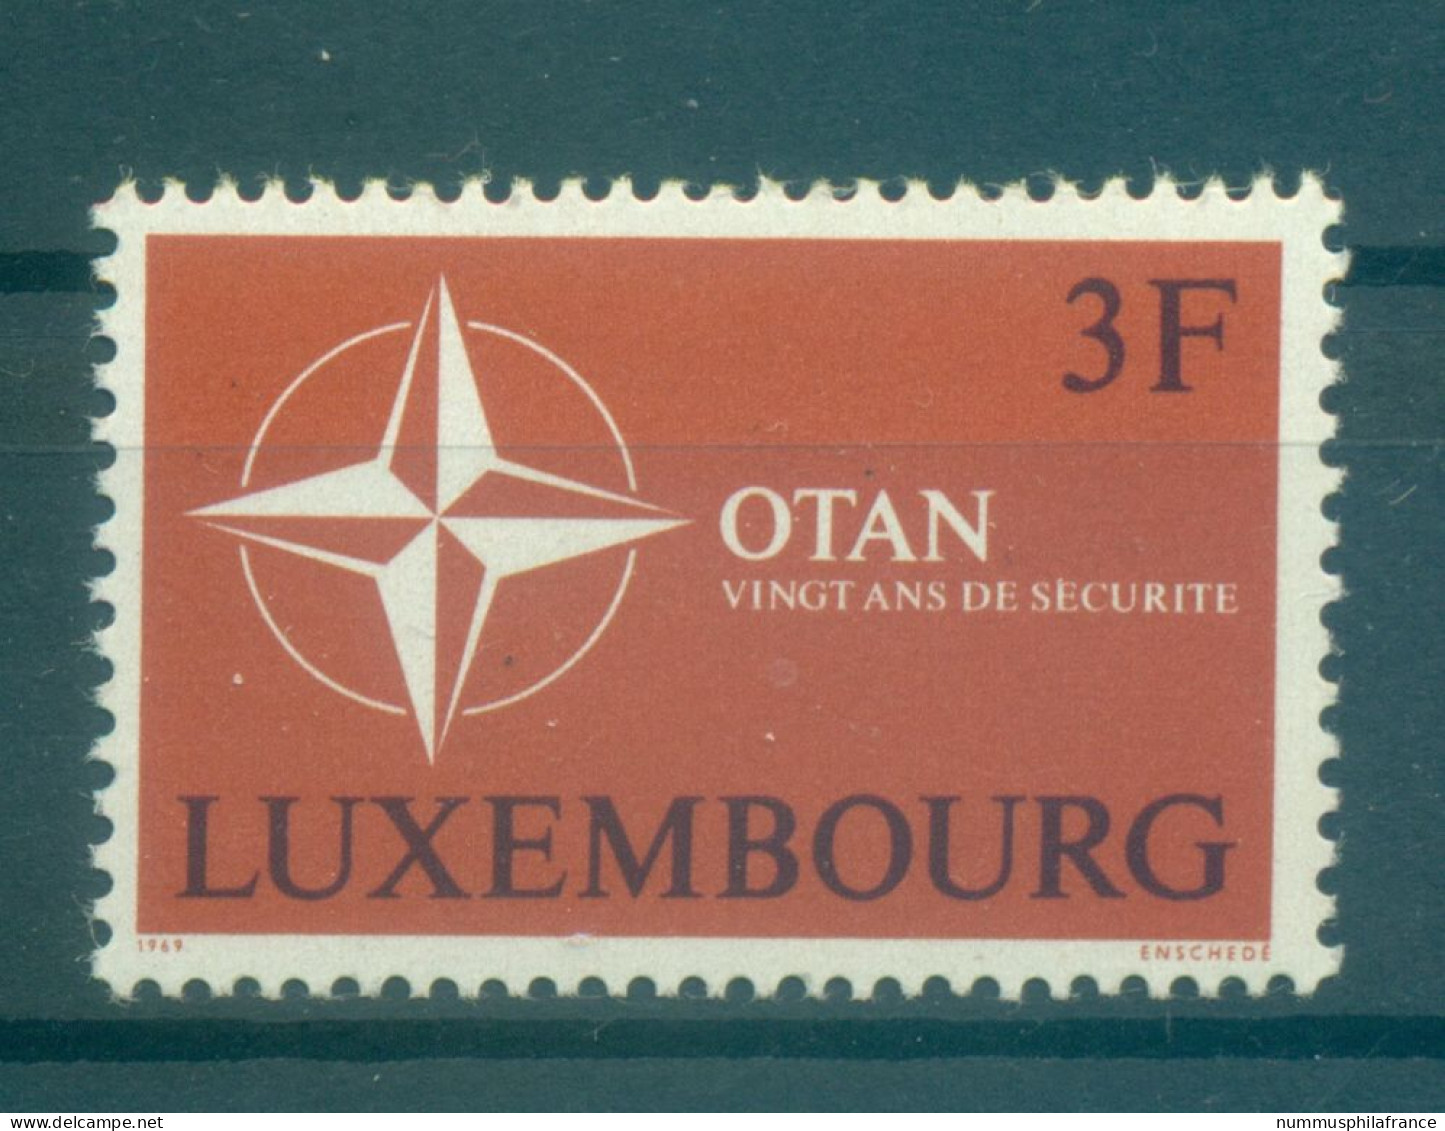 Luxembourg 1969 - Y & T N. 744 - OTAN (Michel N. 794) - Nuevos